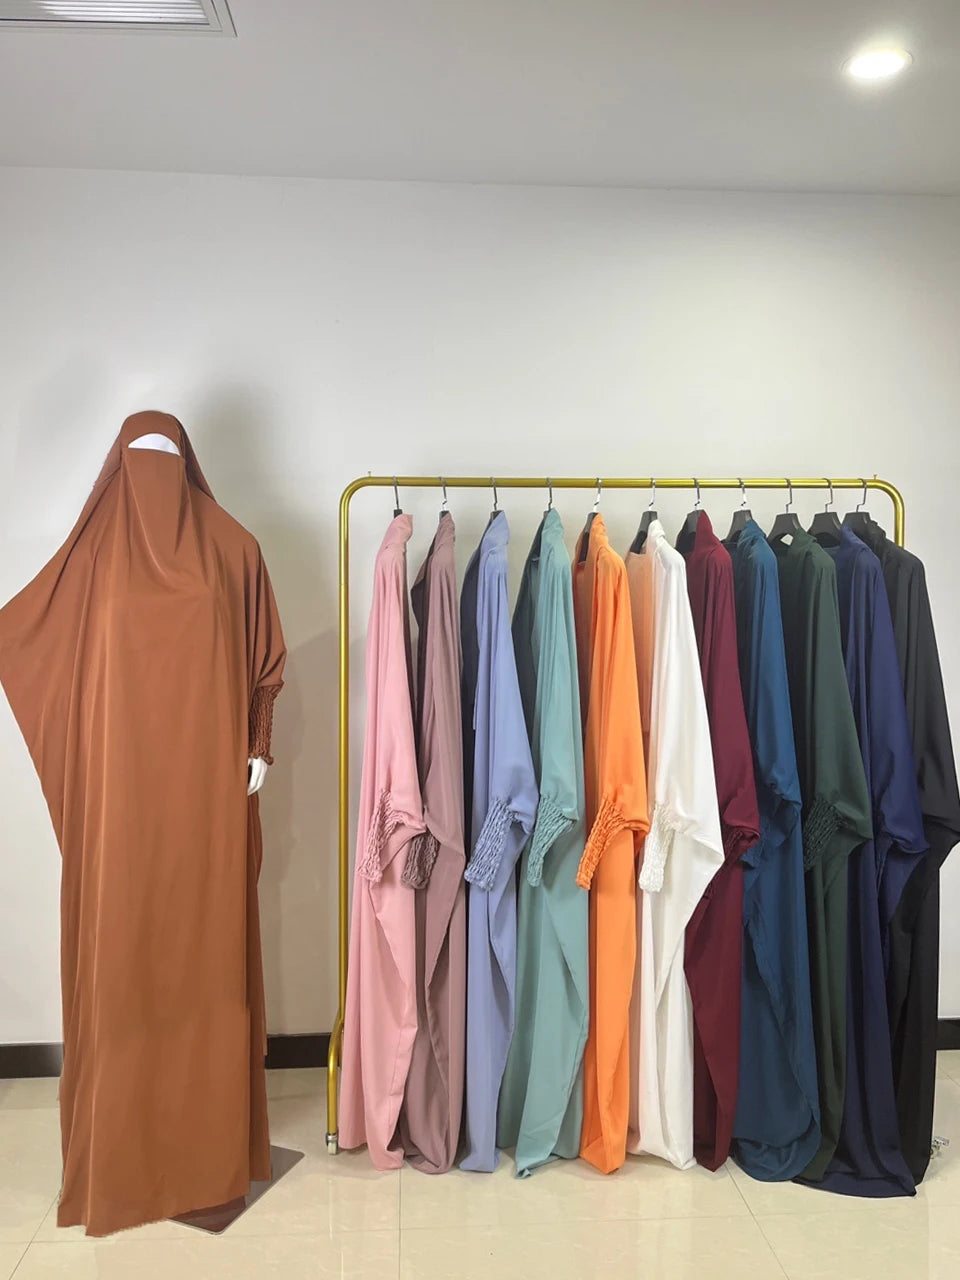 best hijaab dressHooded Abaya Muslim Women Prayer Garment Hijab Dress jilbaab dress, somali dress Arabic Robe Overhead Kaftan Khimar Jilbab Eid Ramadan Gown Islamic Clothes